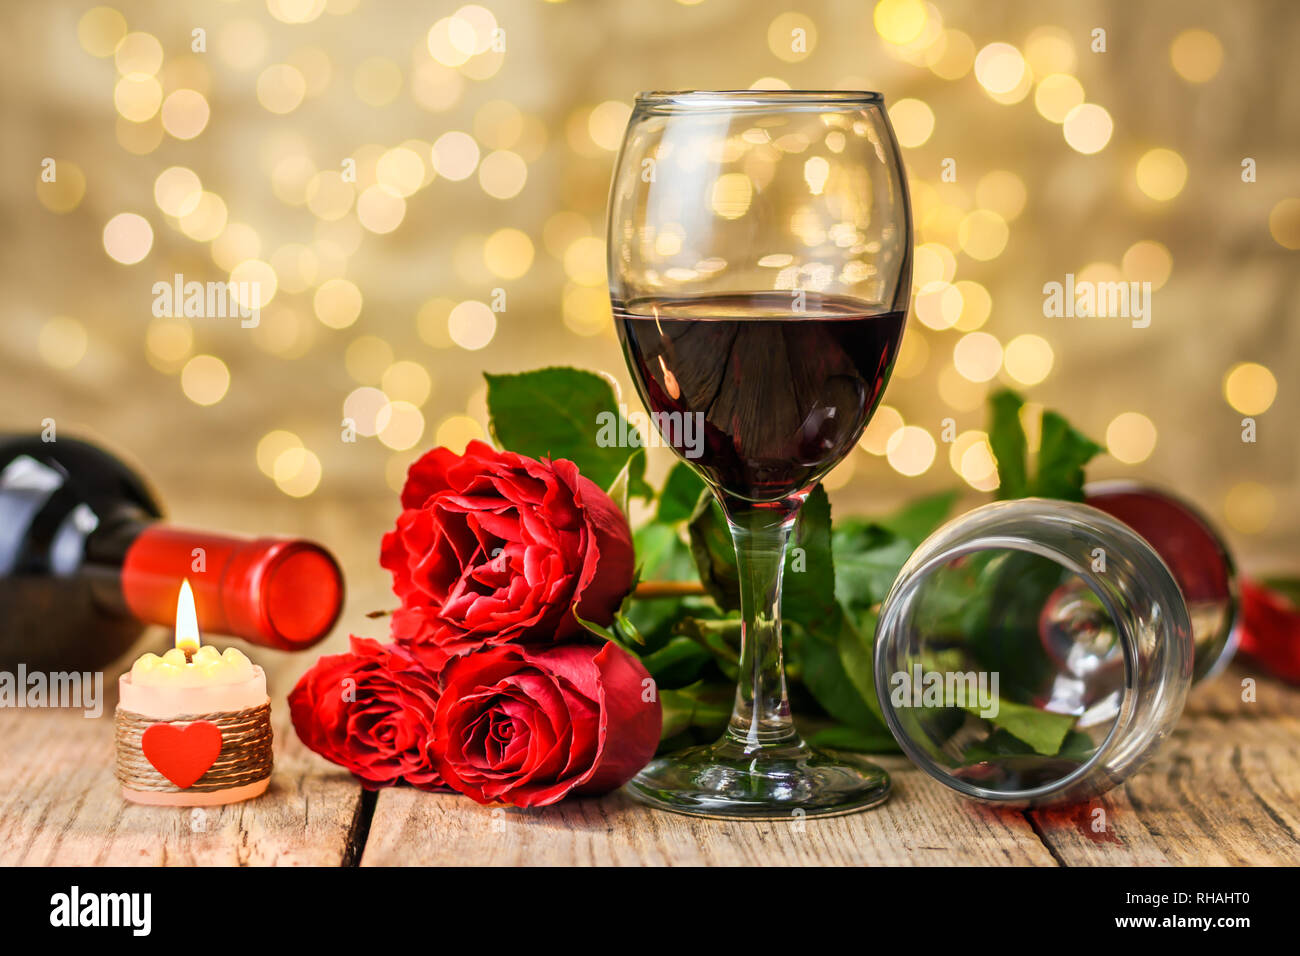 Il giorno di San Valentino del concetto. Due bicchieri di vino, rose rosse, bottiglia di vino e la masterizzazione di candela su una tavola in legno rustico. Foto Stock